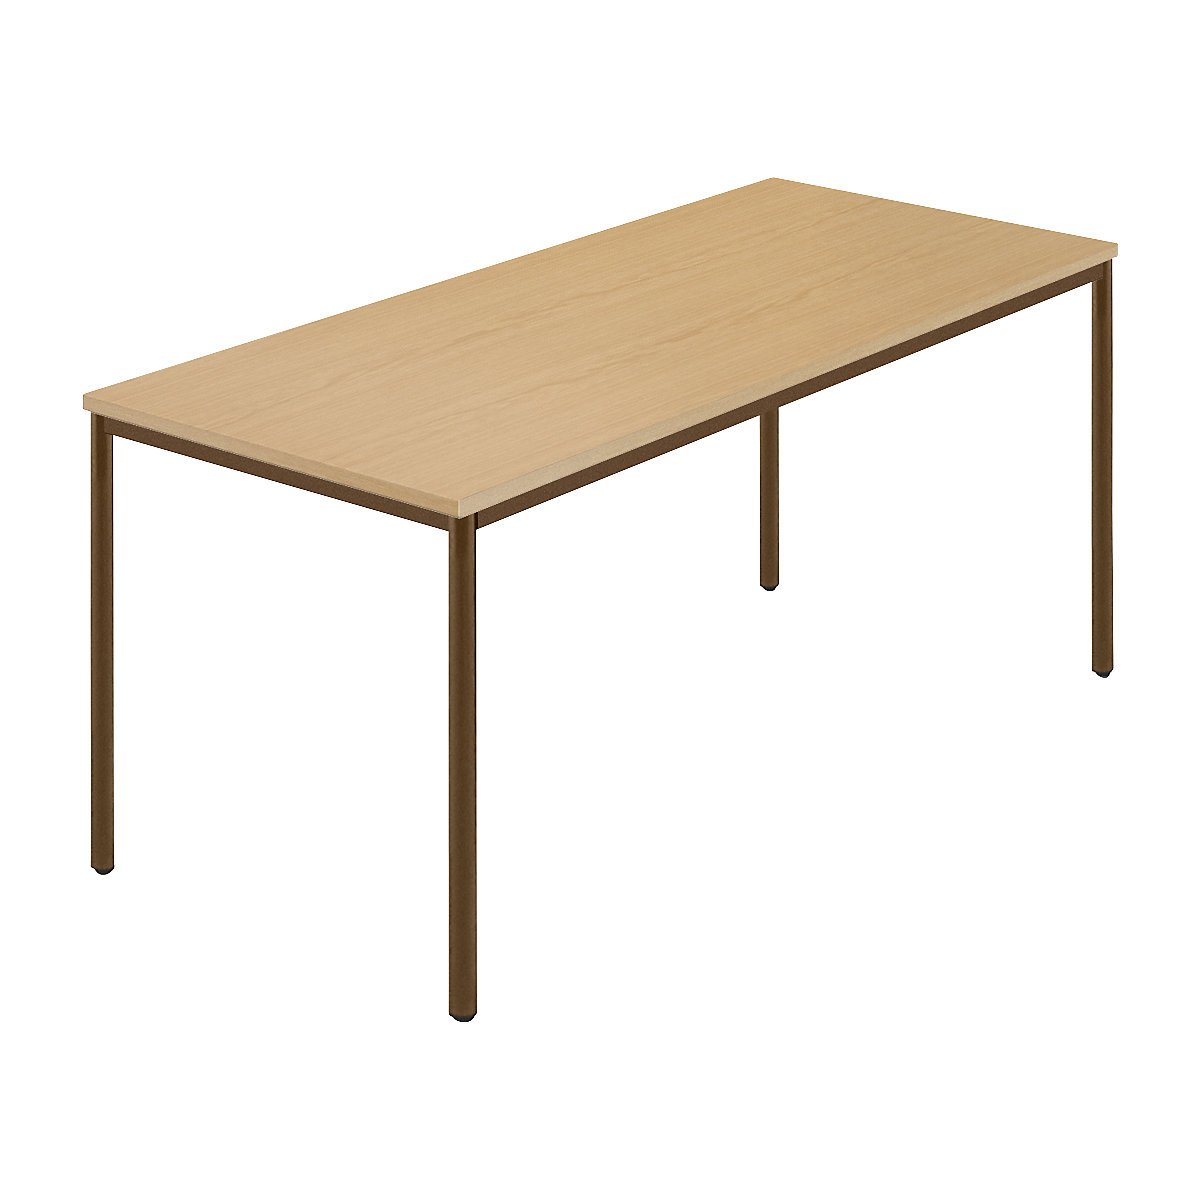 Pravokotna miza, okrogla cev s premazom, ŠxG 1600 x 800 mm, naravna bukev / rjava-4